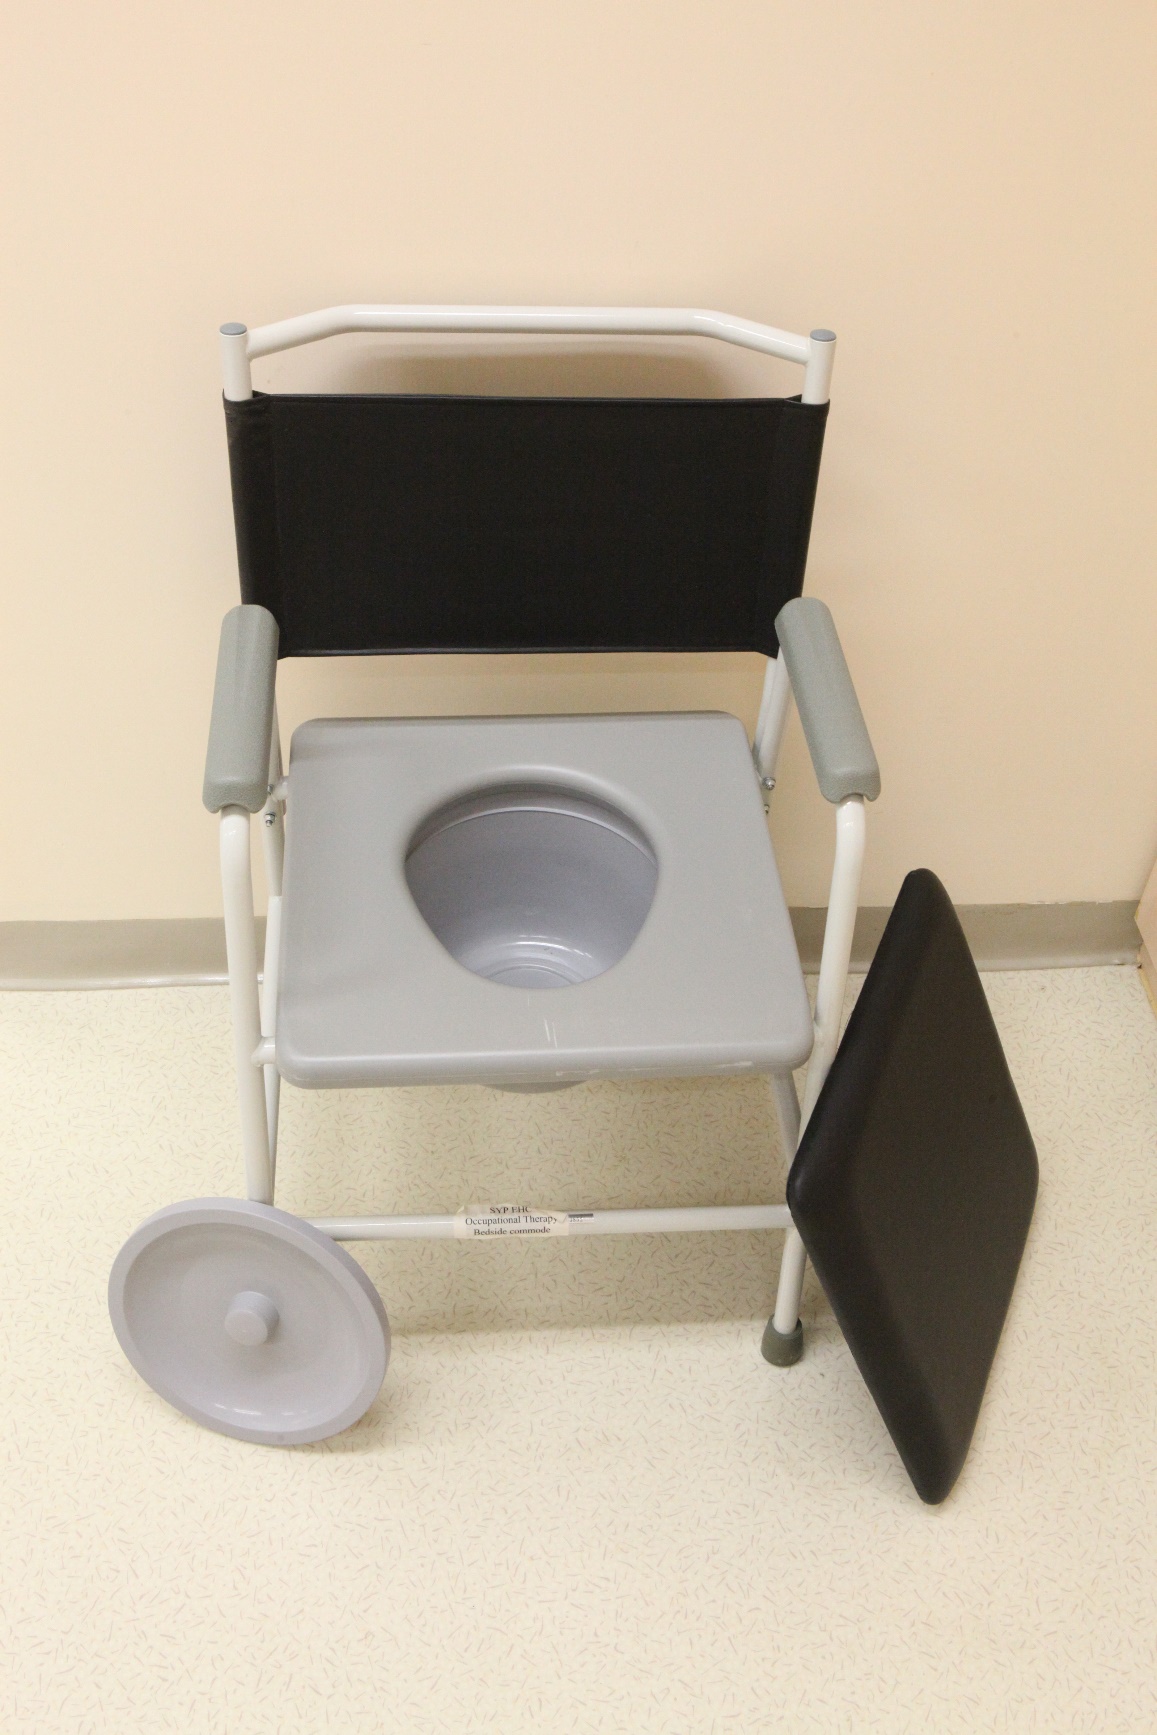 圖中是一張固定式便椅，旁邊有一個拆下的蓋子，揭蓋後有坐廁板及下面有膠桶盛載排泄物，膠桶可以拉出來方便清潔。